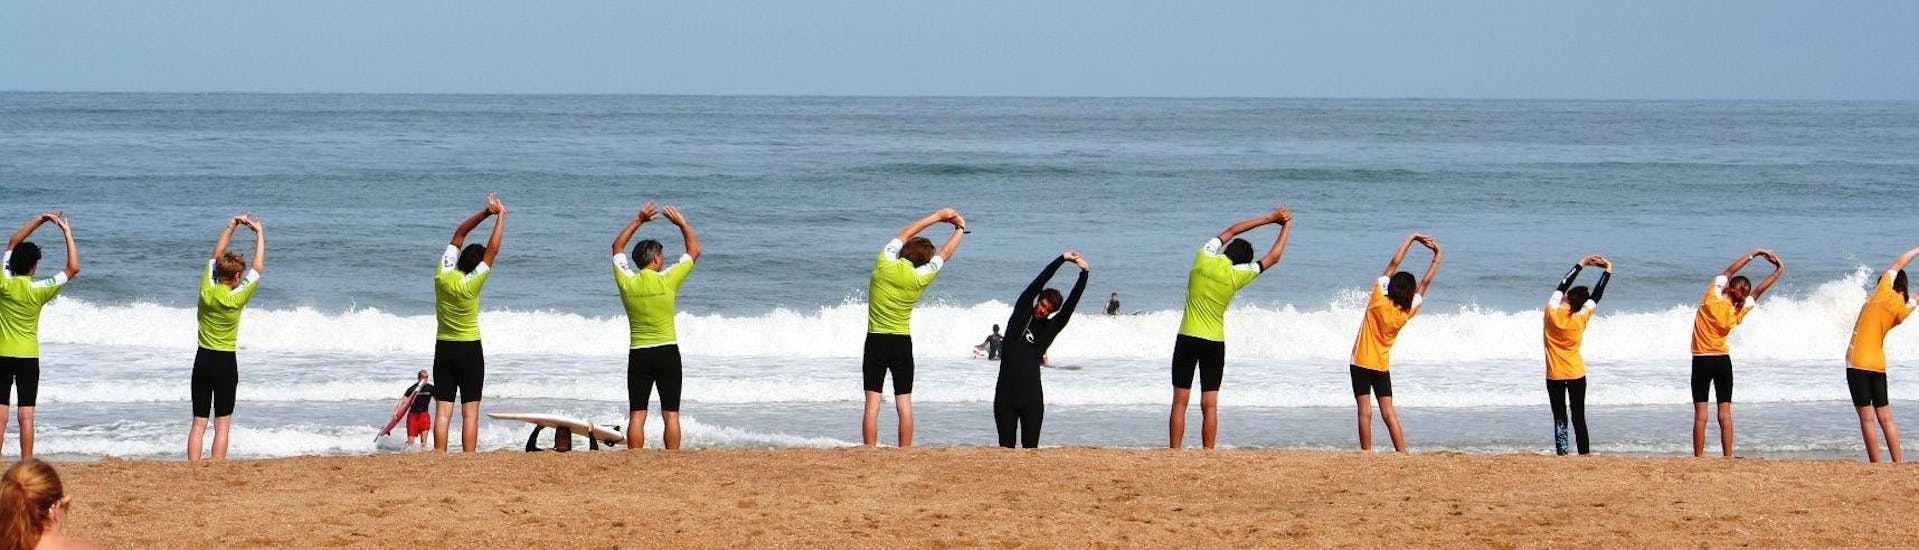 Les surfeurs s'échauffent sur la plage avant le début de leur Cours de surf collectif "À la carte" sur la Plage de Marinella à Anglet avec l'école de surf Le Club de la Glisse.